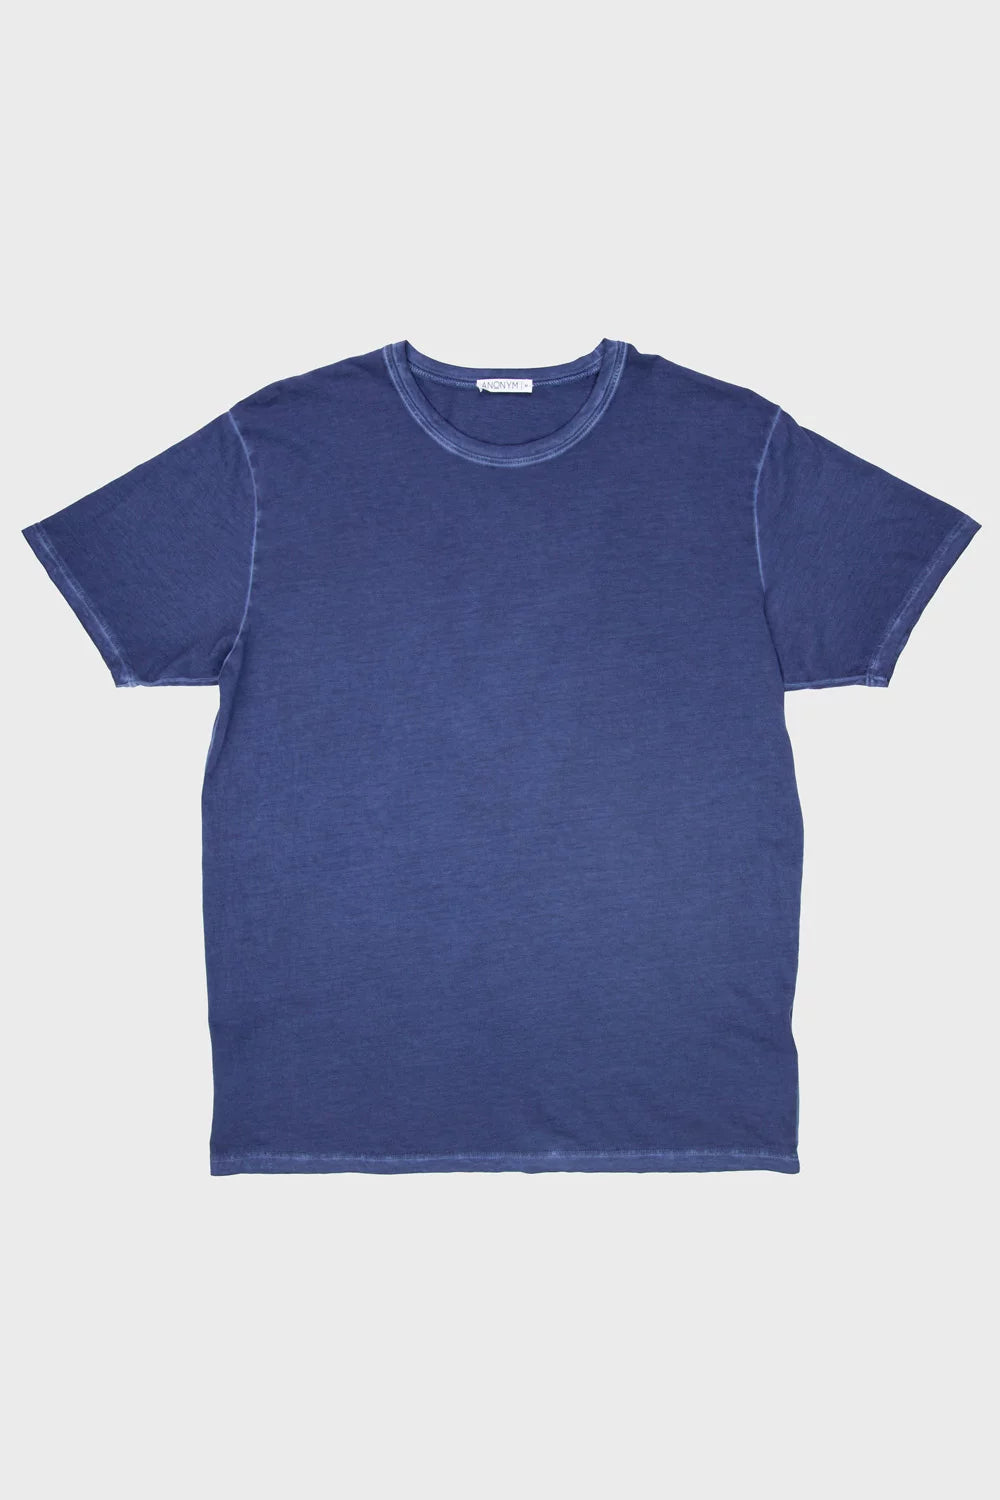 ANONYM Julesw Crew T-Shirt | BLUE